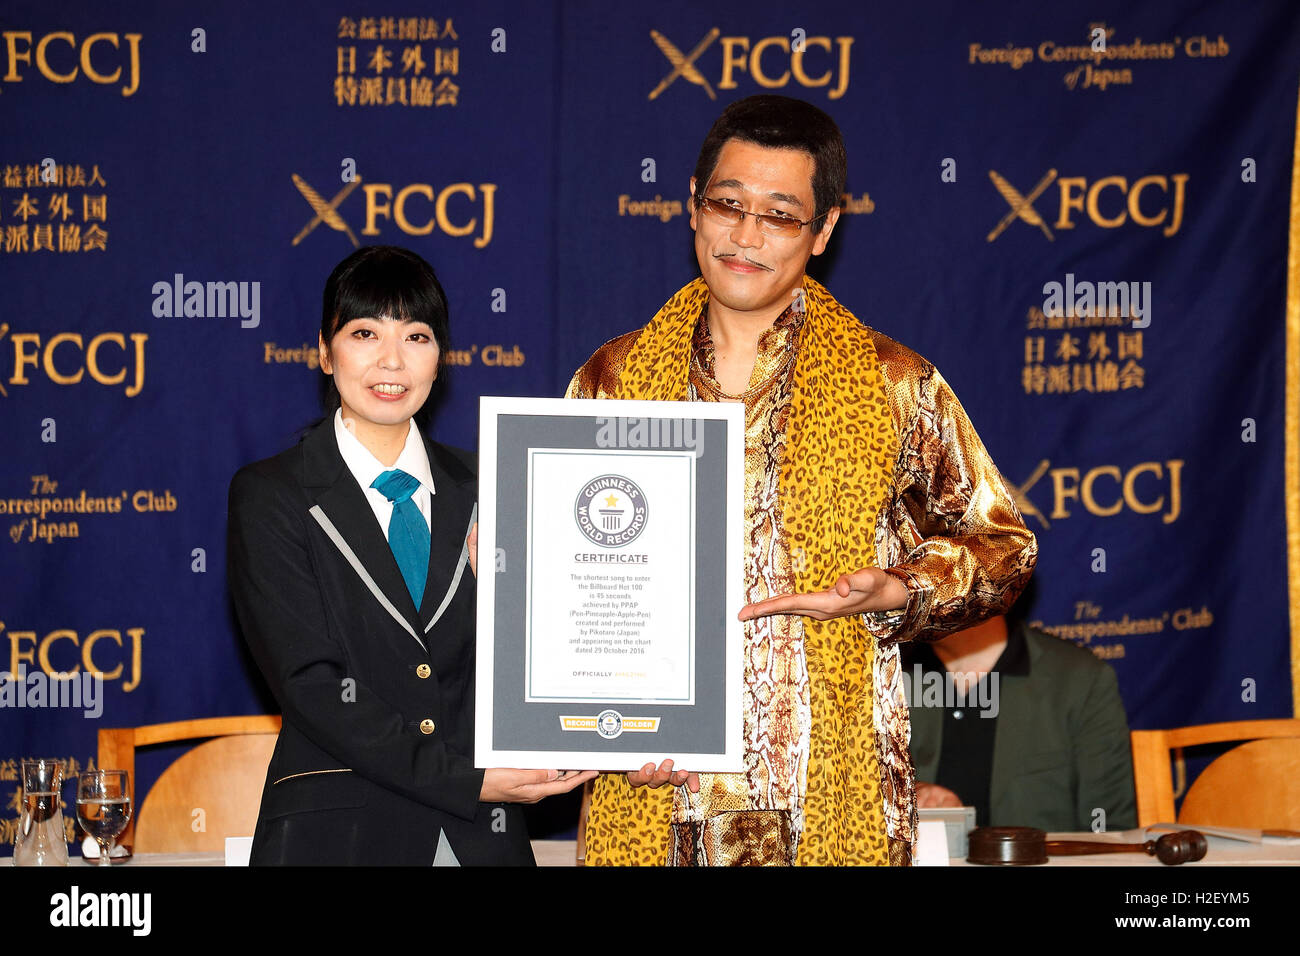 Tokyo, Japon. 28 Oct, 2016. Le comédien japonais (Pikotaro Taro Piko) reçoit un certificat de record du monde Guinness pour sa chanson Ananas Stylo Stylo Apple (PPAP) au cours d'une conférence de presse au Club des correspondants étrangers du Japon le 28 octobre 2016, Tokyo, Japon. Pikotaro (de son vrai nom Kazuhito Kosaka et aussi connu sous le nom de scène Kosaka Daimaou) a reçu un certificat du Guinness World Record pour sa chanson ''PPAP'' pour être la chanson la plus courte jamais à entrer dans le Billboard Hot 100. Avec plus de 130 millions de vues sur YouTube, la chanson a inspiré d'innombrables imitateurs télécharger leurs versions originales. Banque D'Images